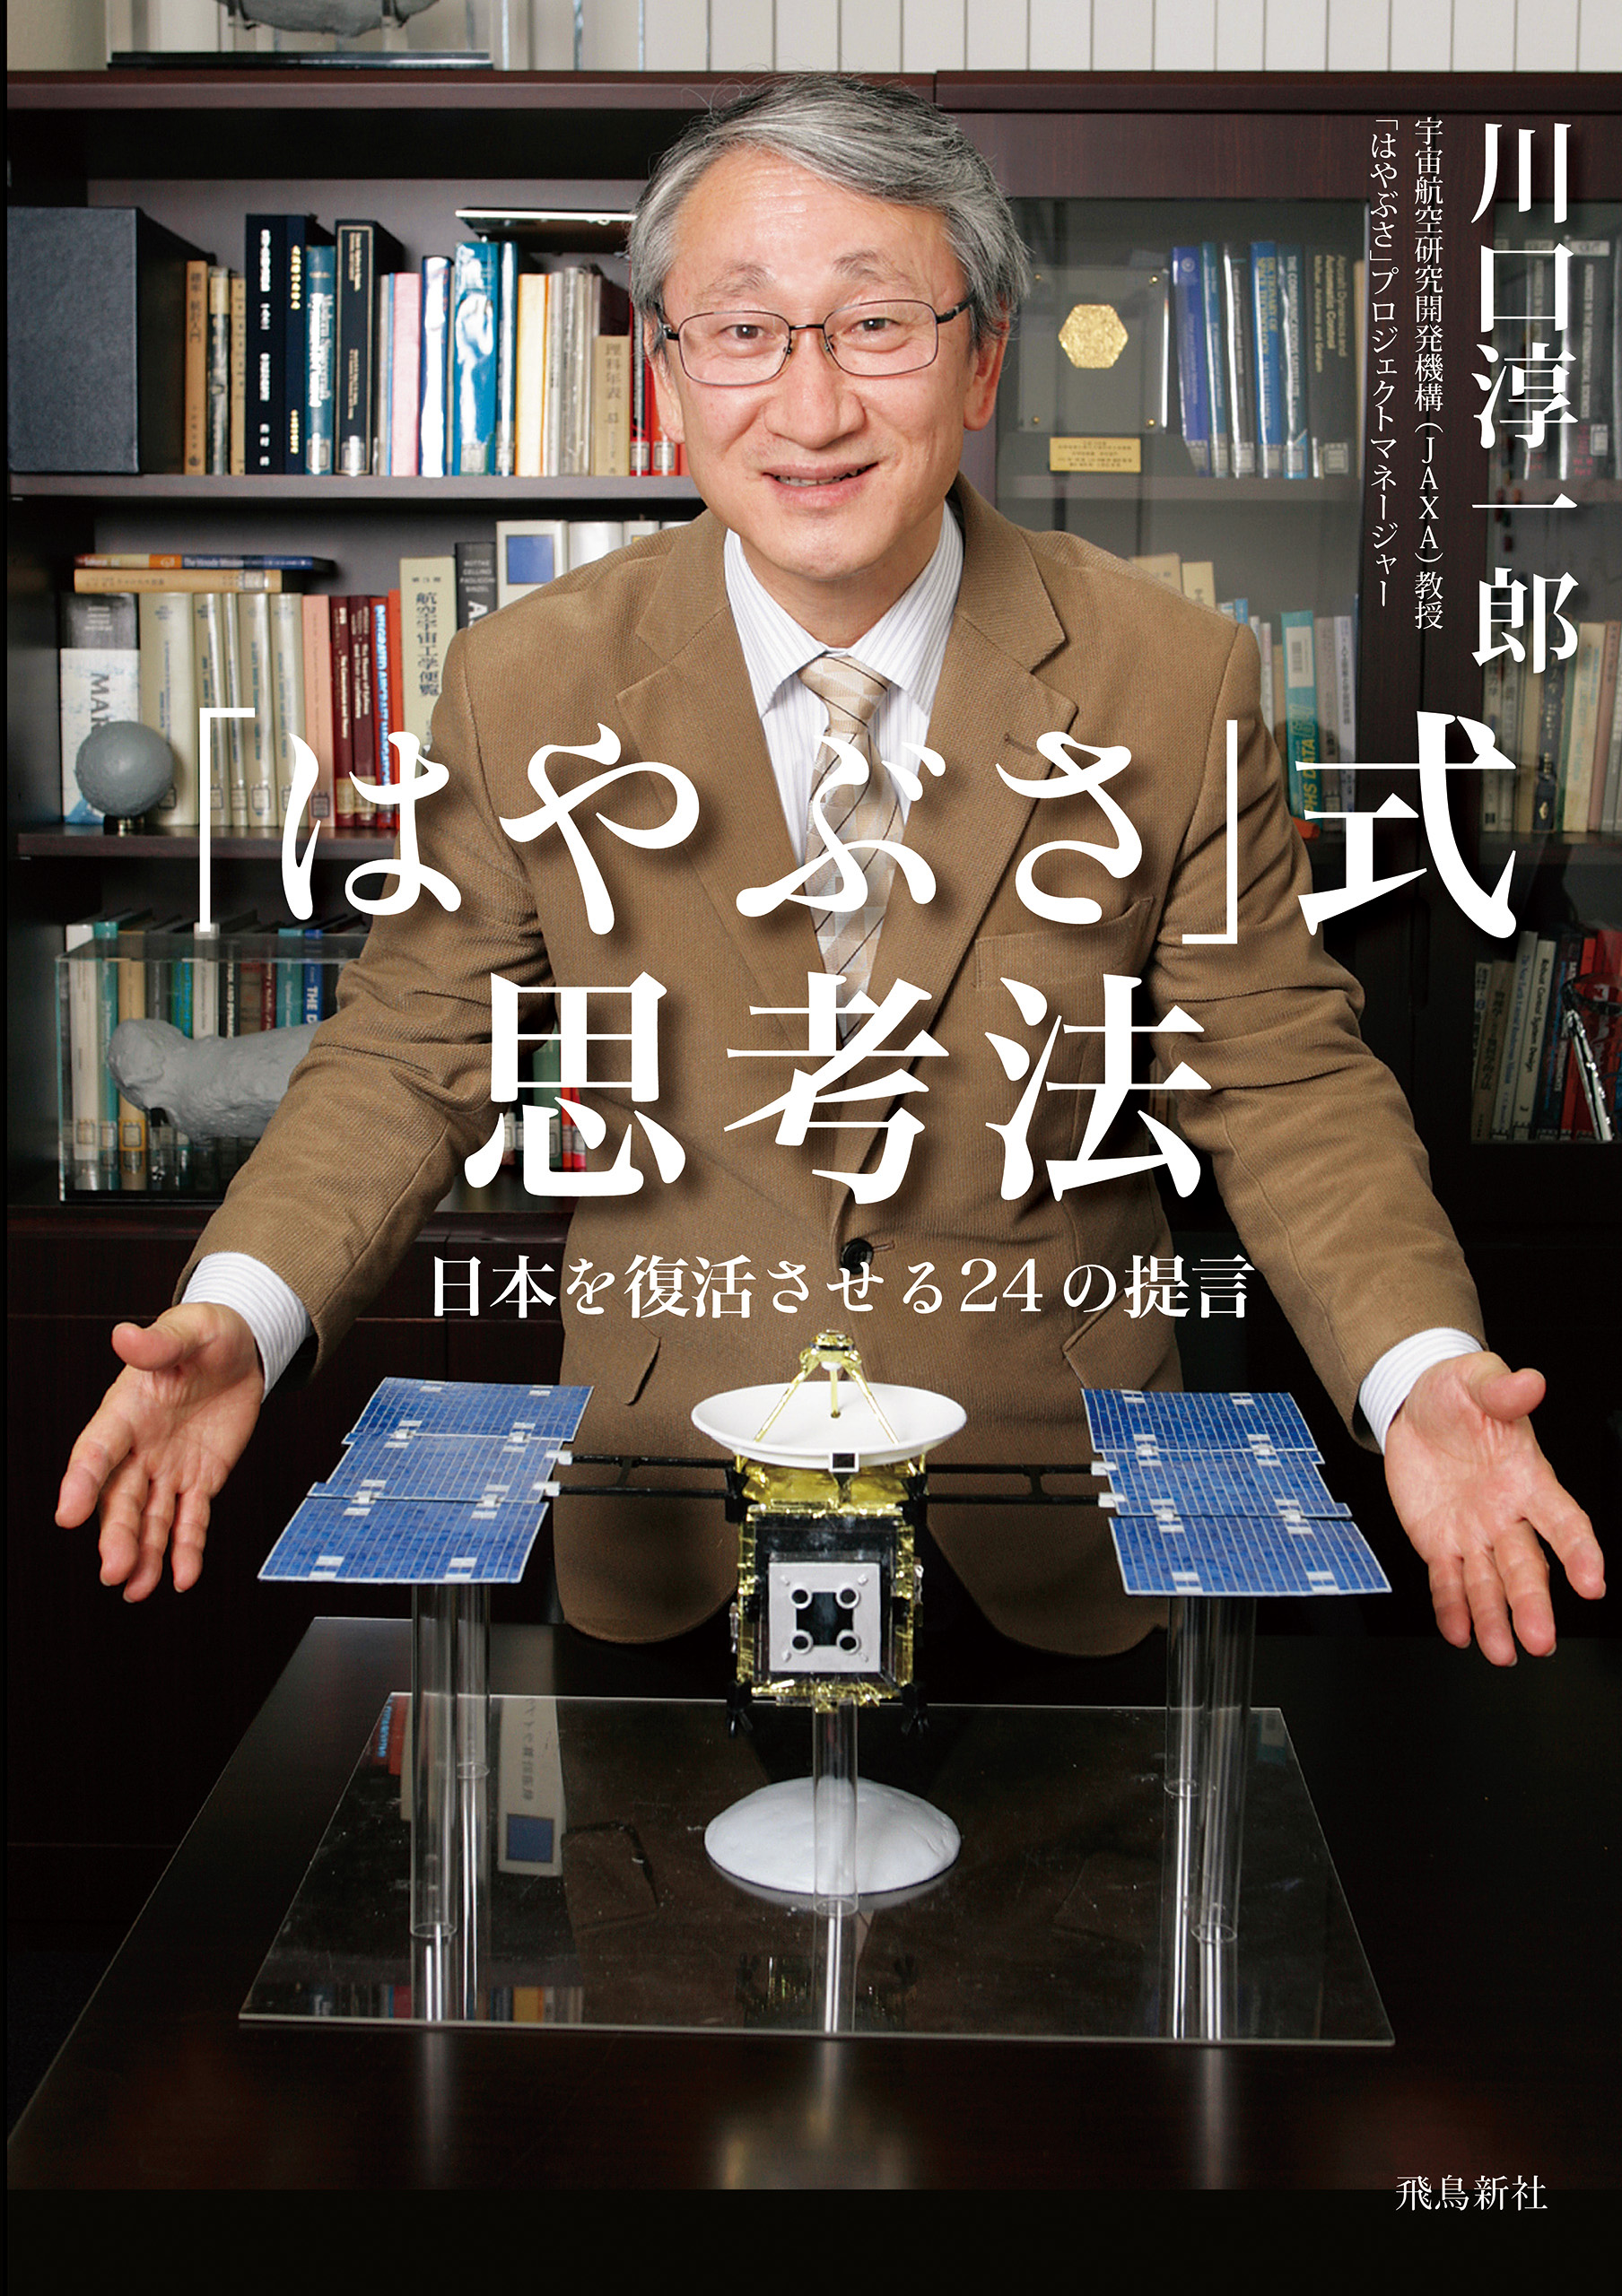 はやぶさ」式思考法 日本を復活させる24の提言(書籍) - 電子書籍 | U-NEXT 初回600円分無料